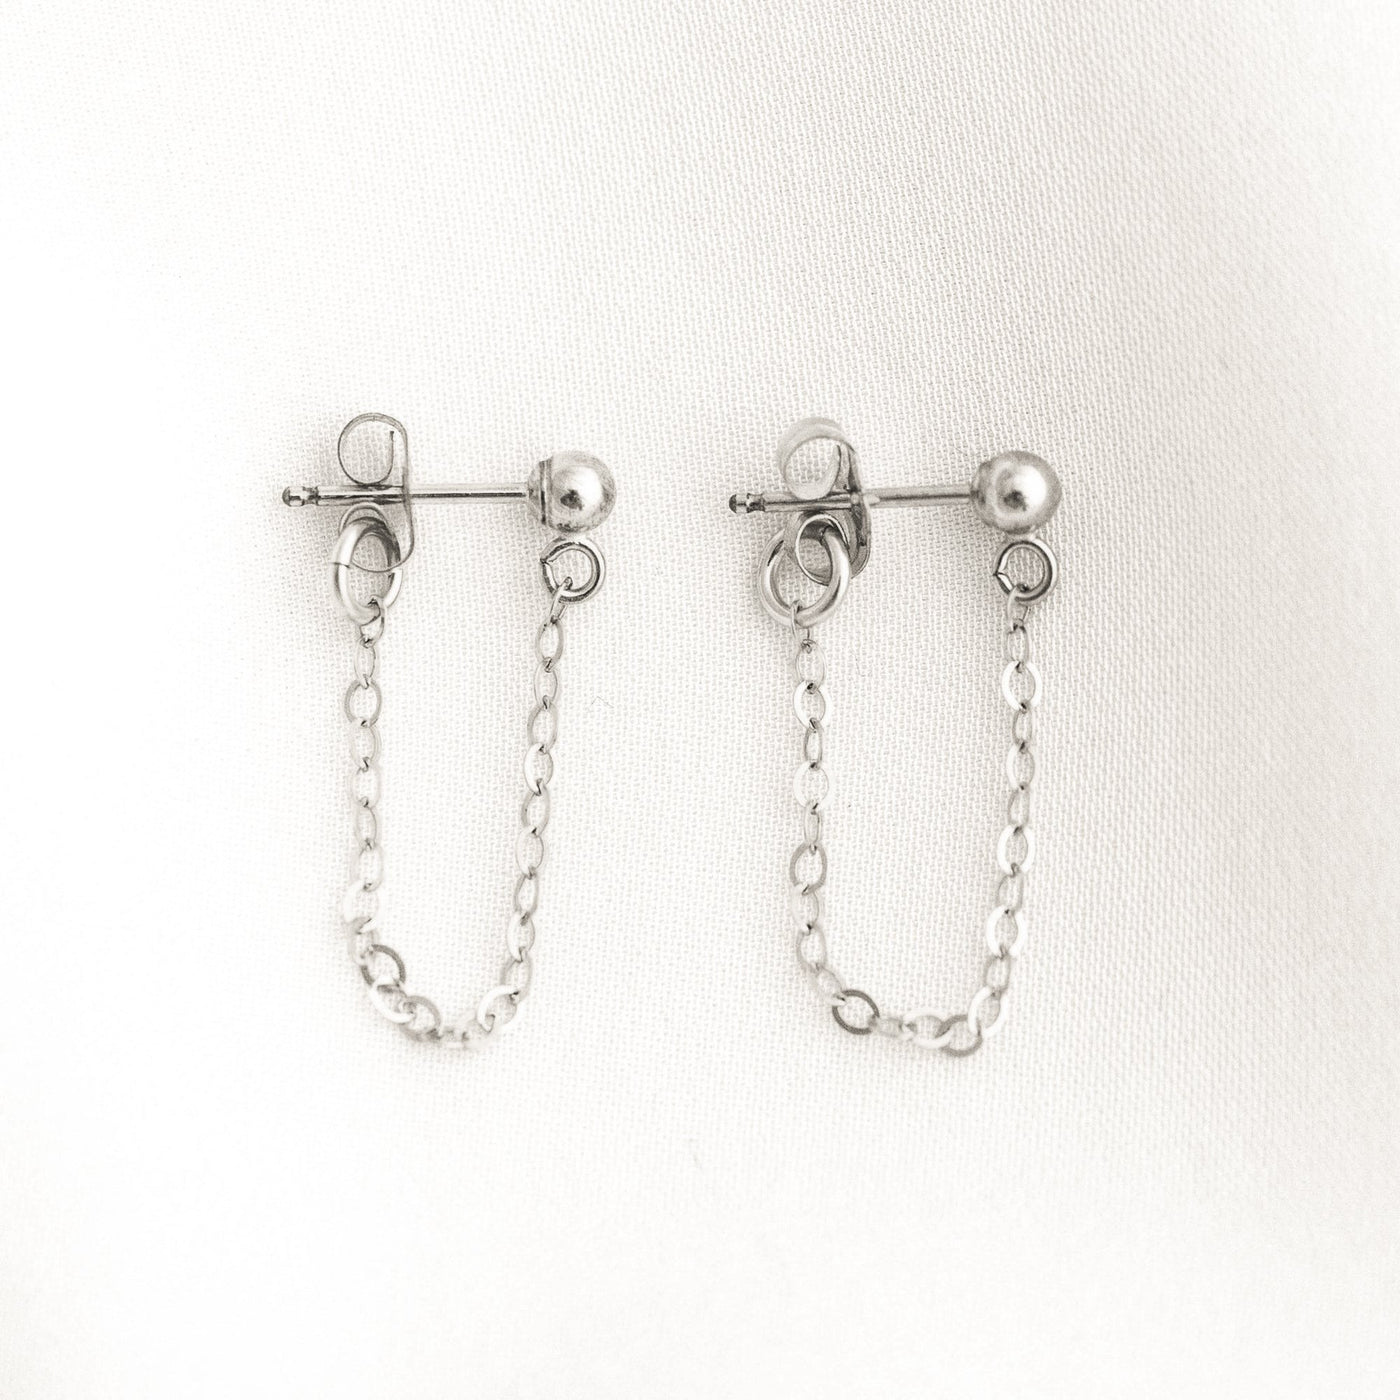 Chain Stud Earrings by Simple & Dainty Jewelry